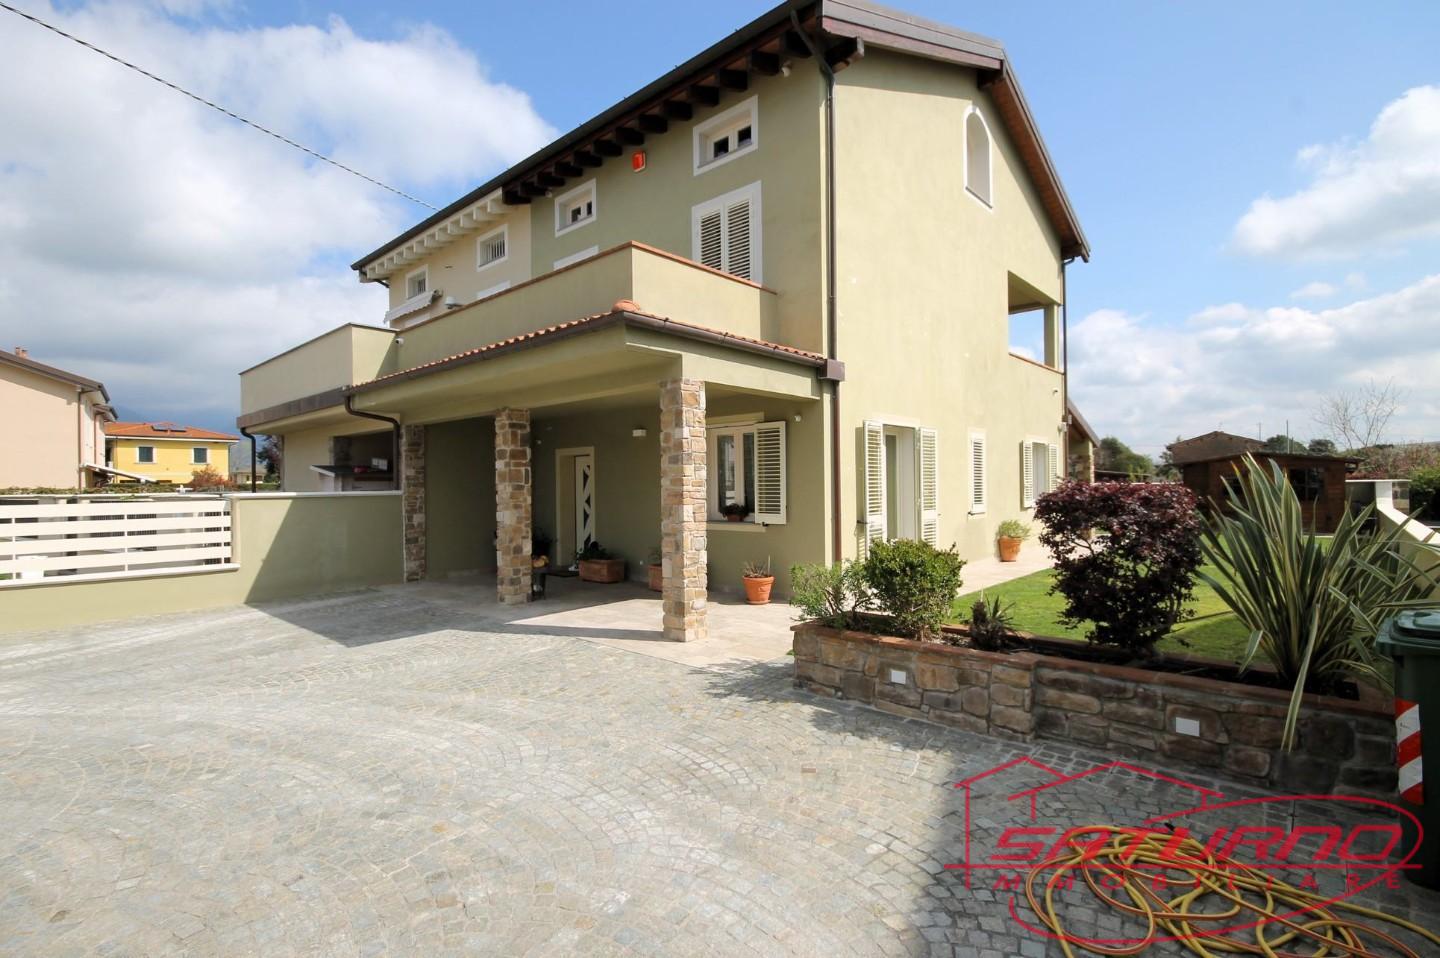 Villa Bifamiliare in vendita a Capannori, 7 locali, prezzo € 395.000 | PortaleAgenzieImmobiliari.it